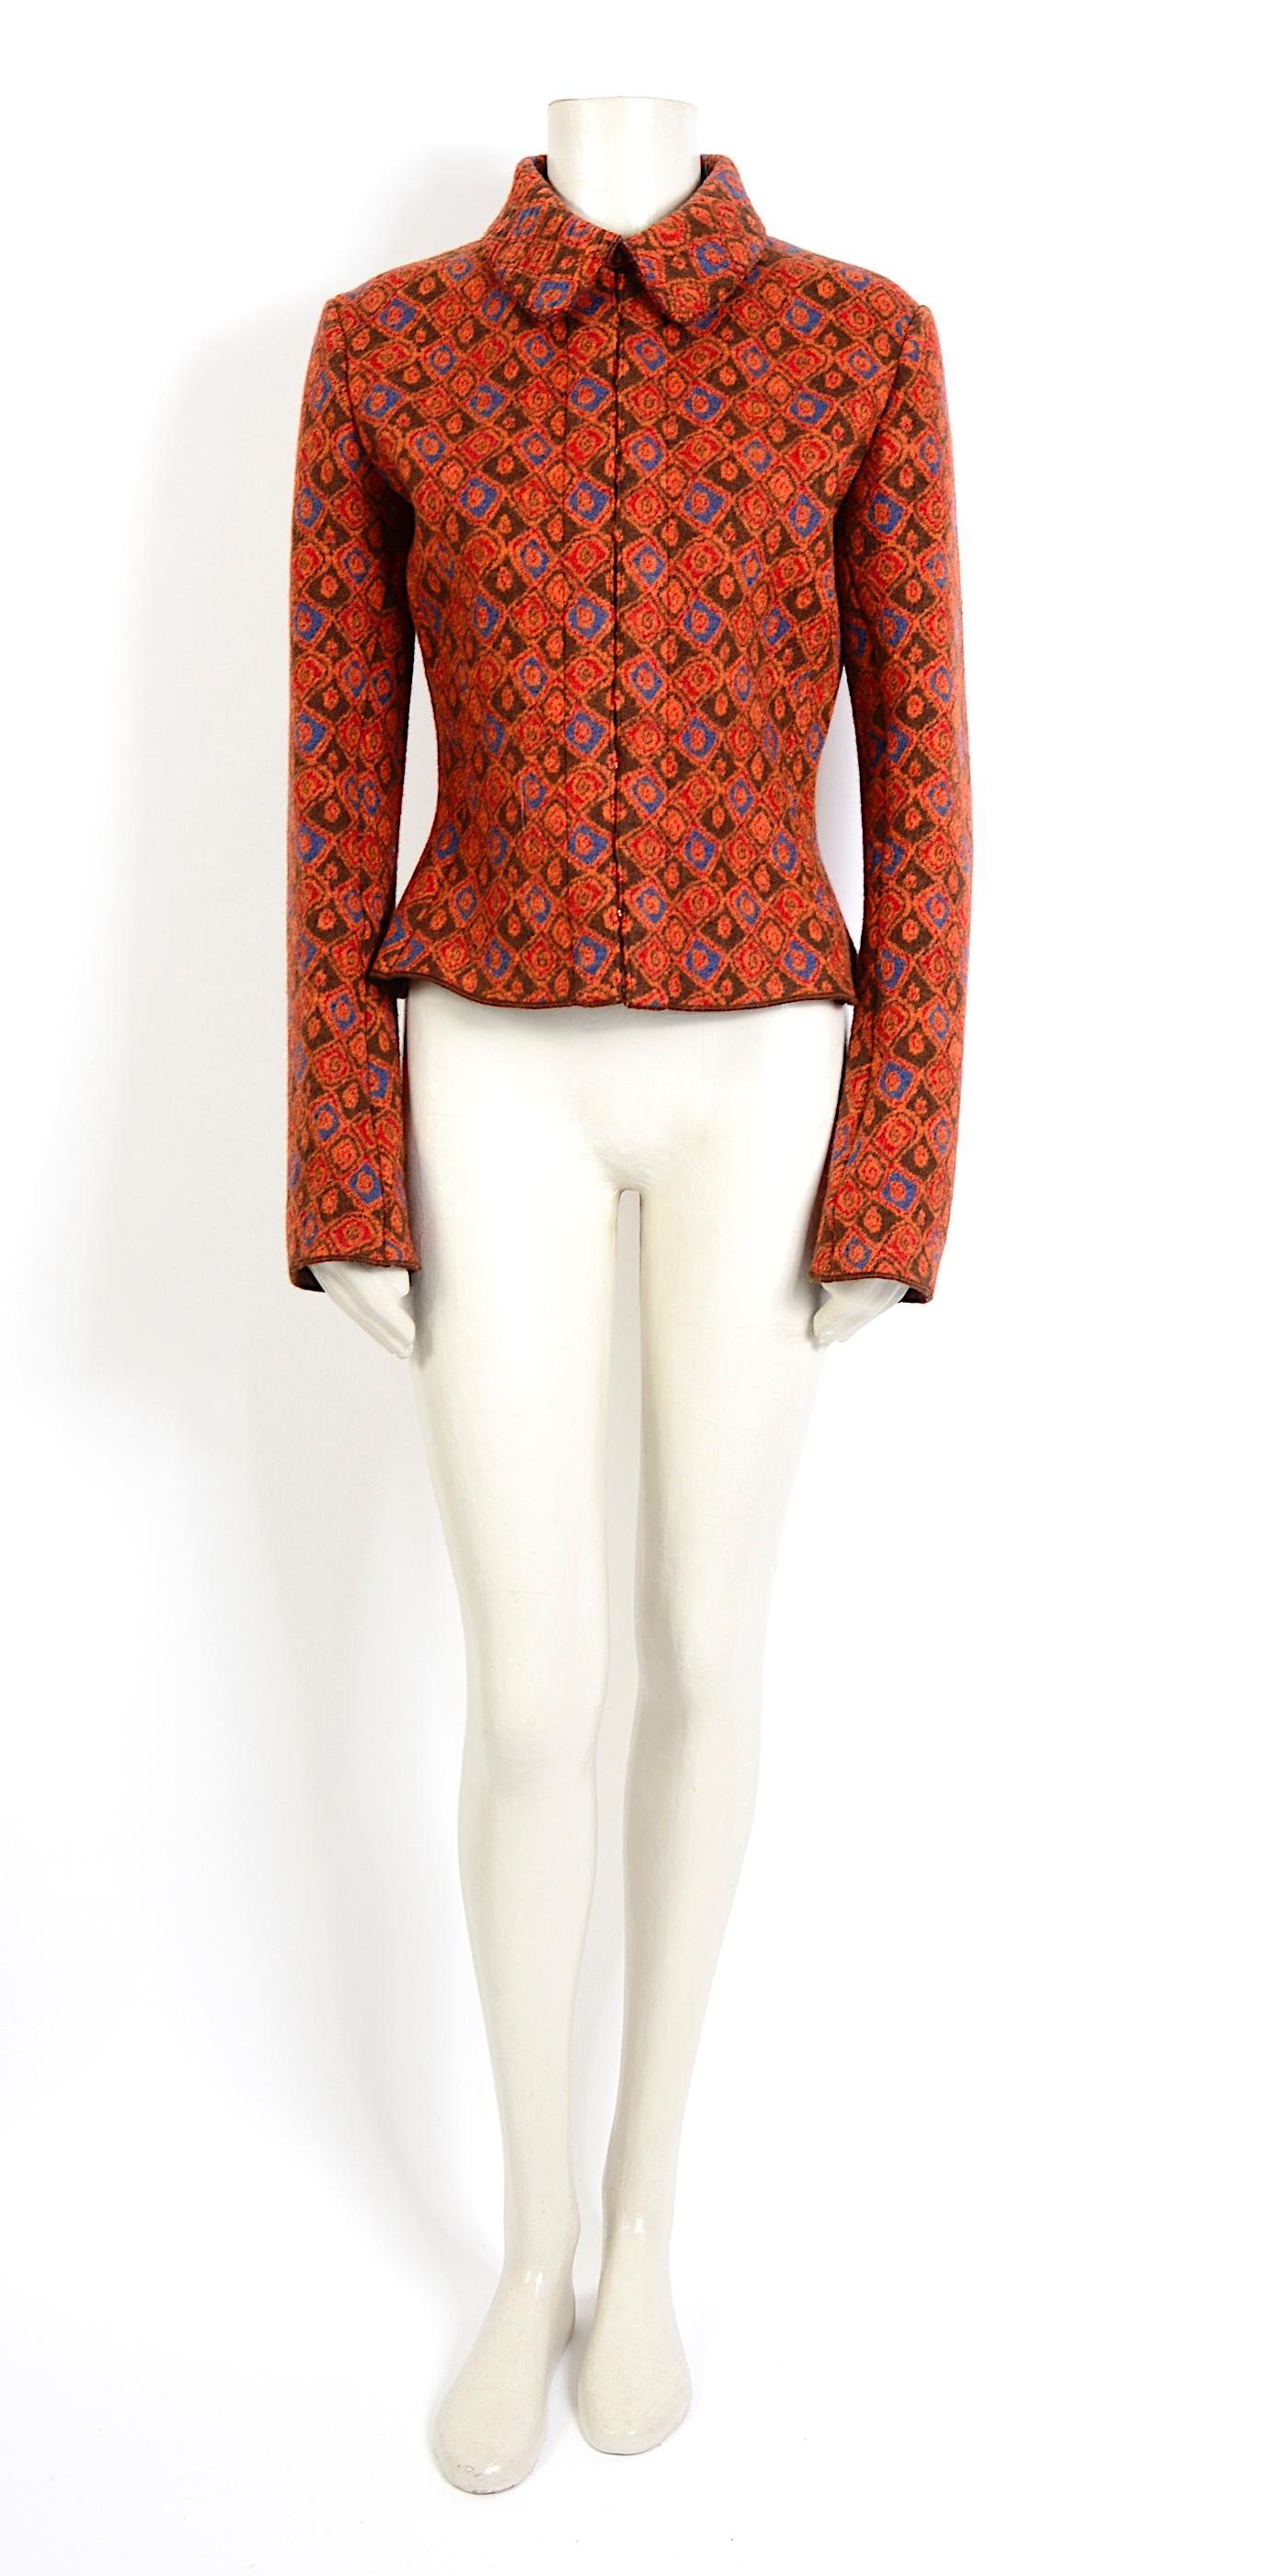 Complétez votre look avec cette superbe veste Alaia à motif orange rouille d'Azzedine Alaia. 
Circa 1990, Intemporel et chic, ce modèle Alaia se mariera parfaitement avec votre jean ou votre jupe préférée. 
Taille M.
Les mesures sont prises à plat